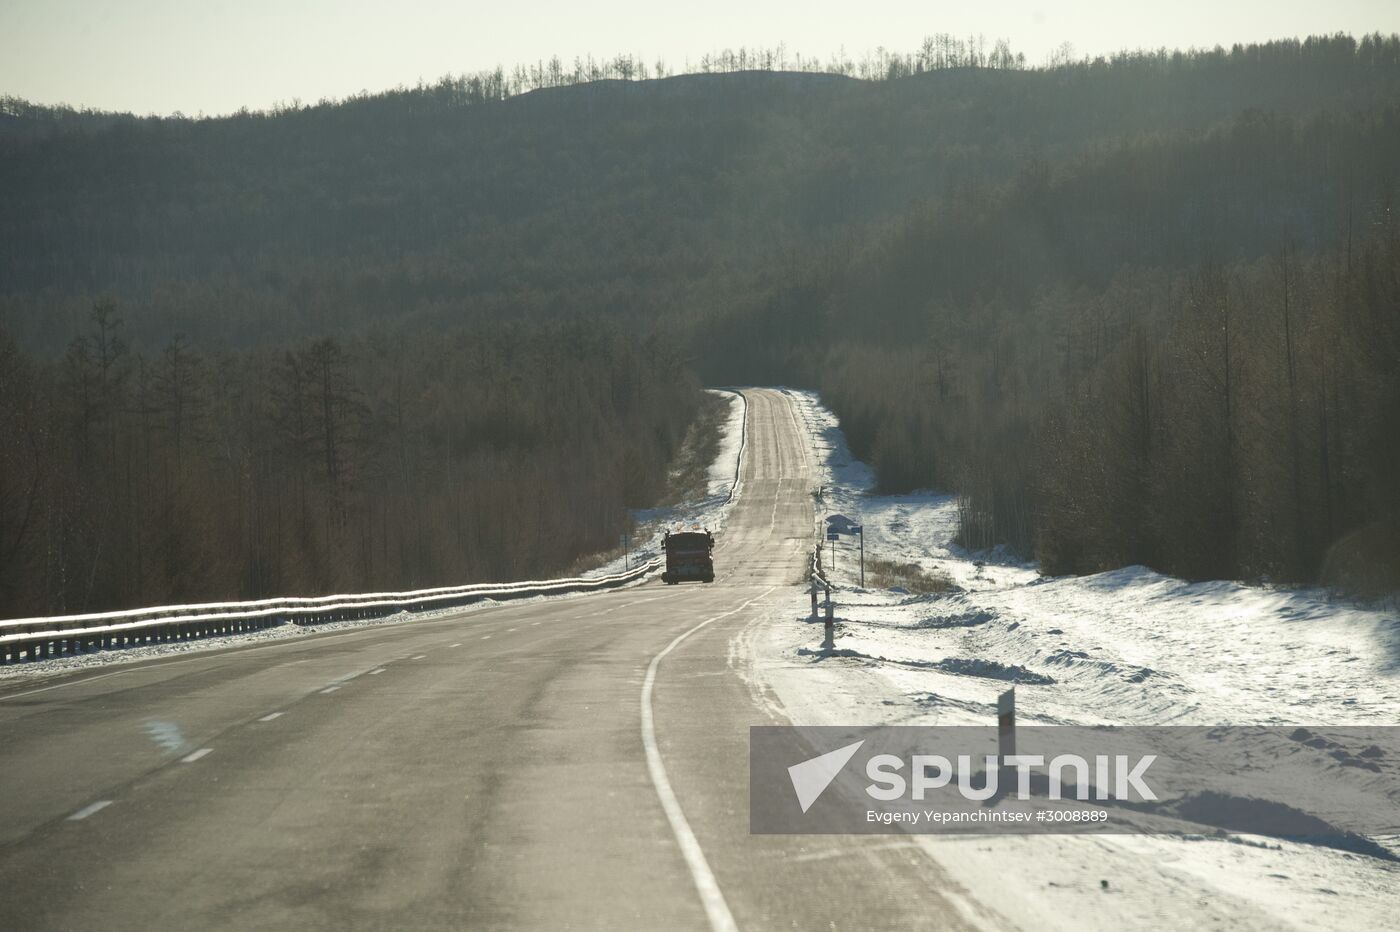 Chita-Amur motorway